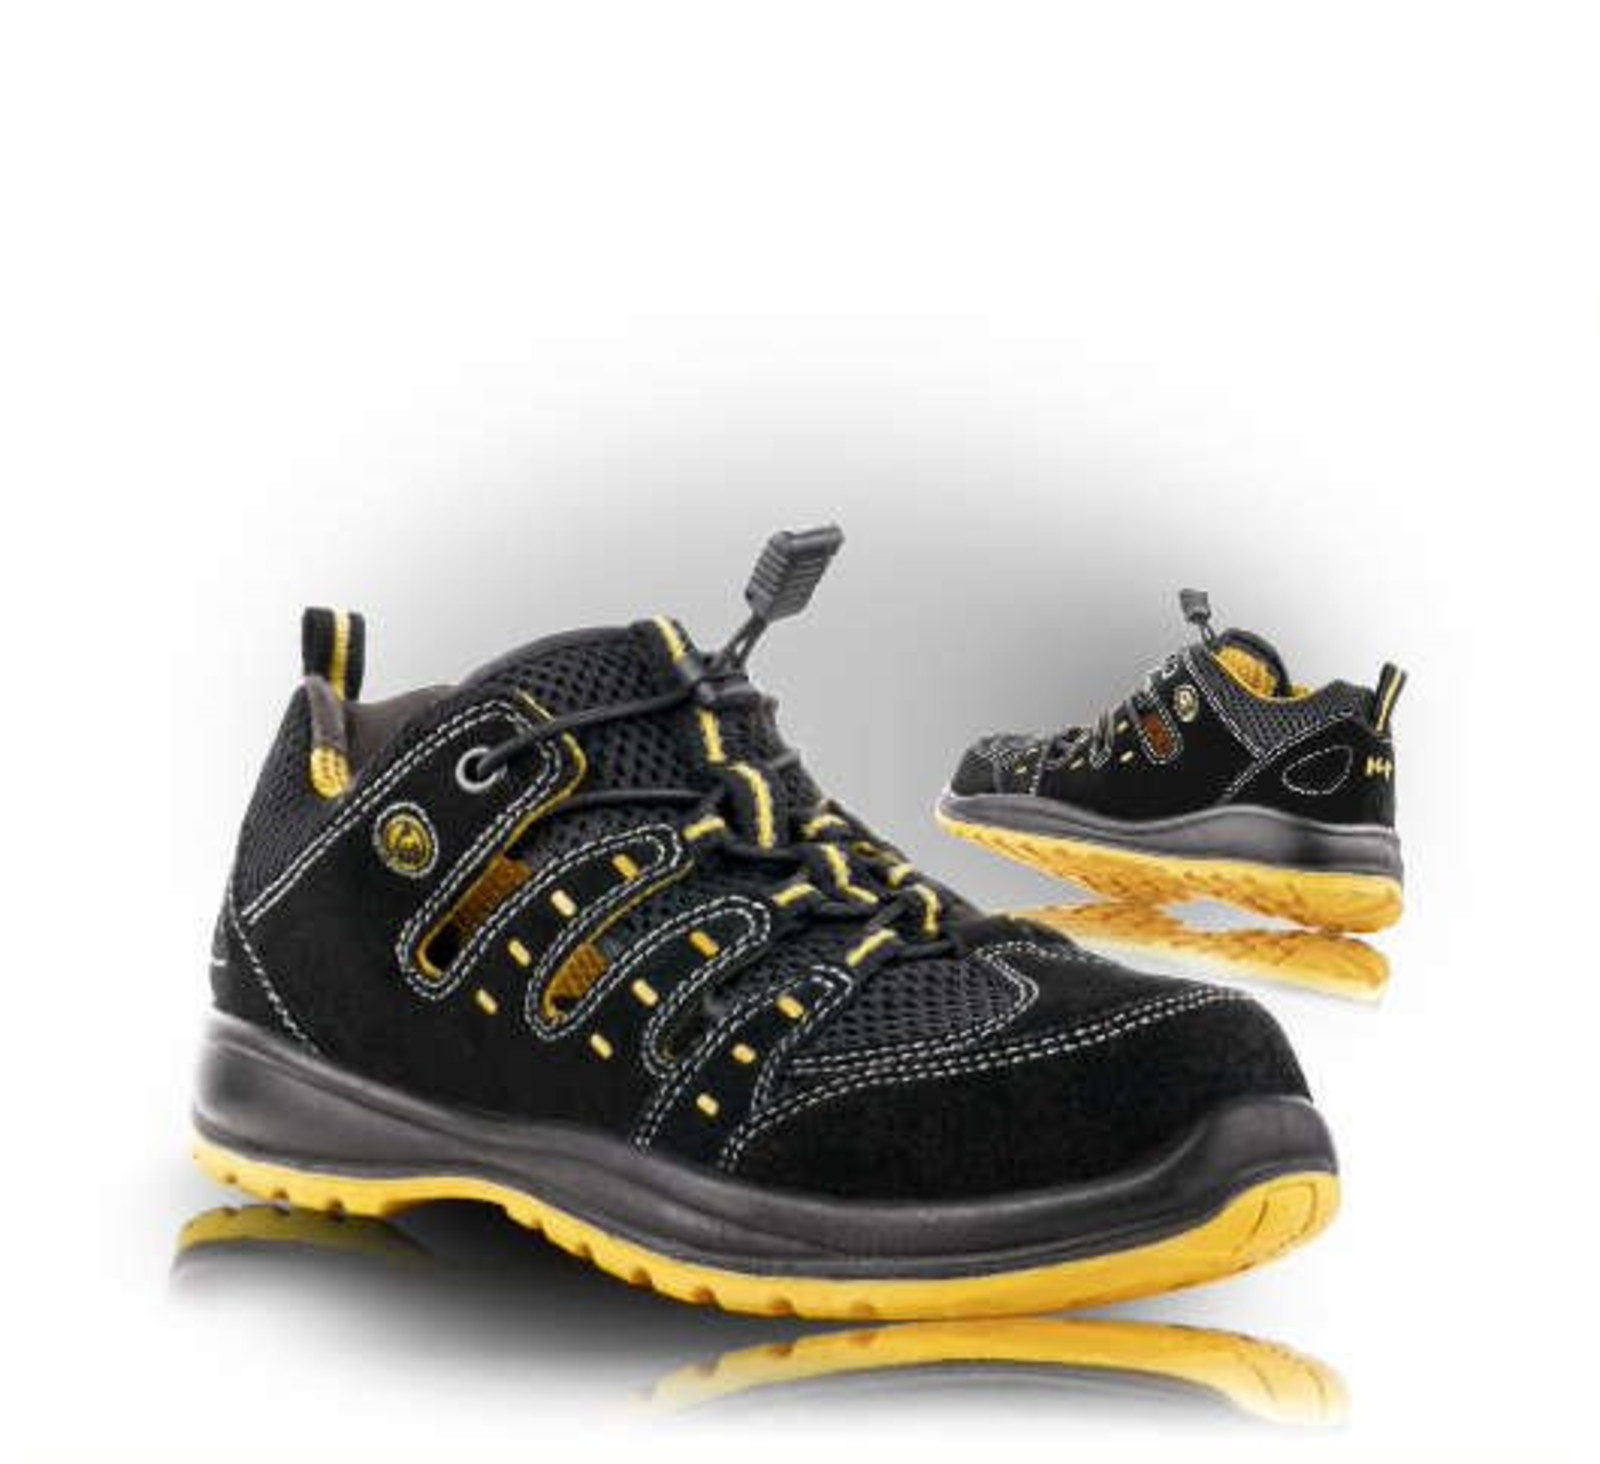 Bezpečnostné sandále Memphis S1 ESD - veľkosť: 43, farba: čierna/žltá